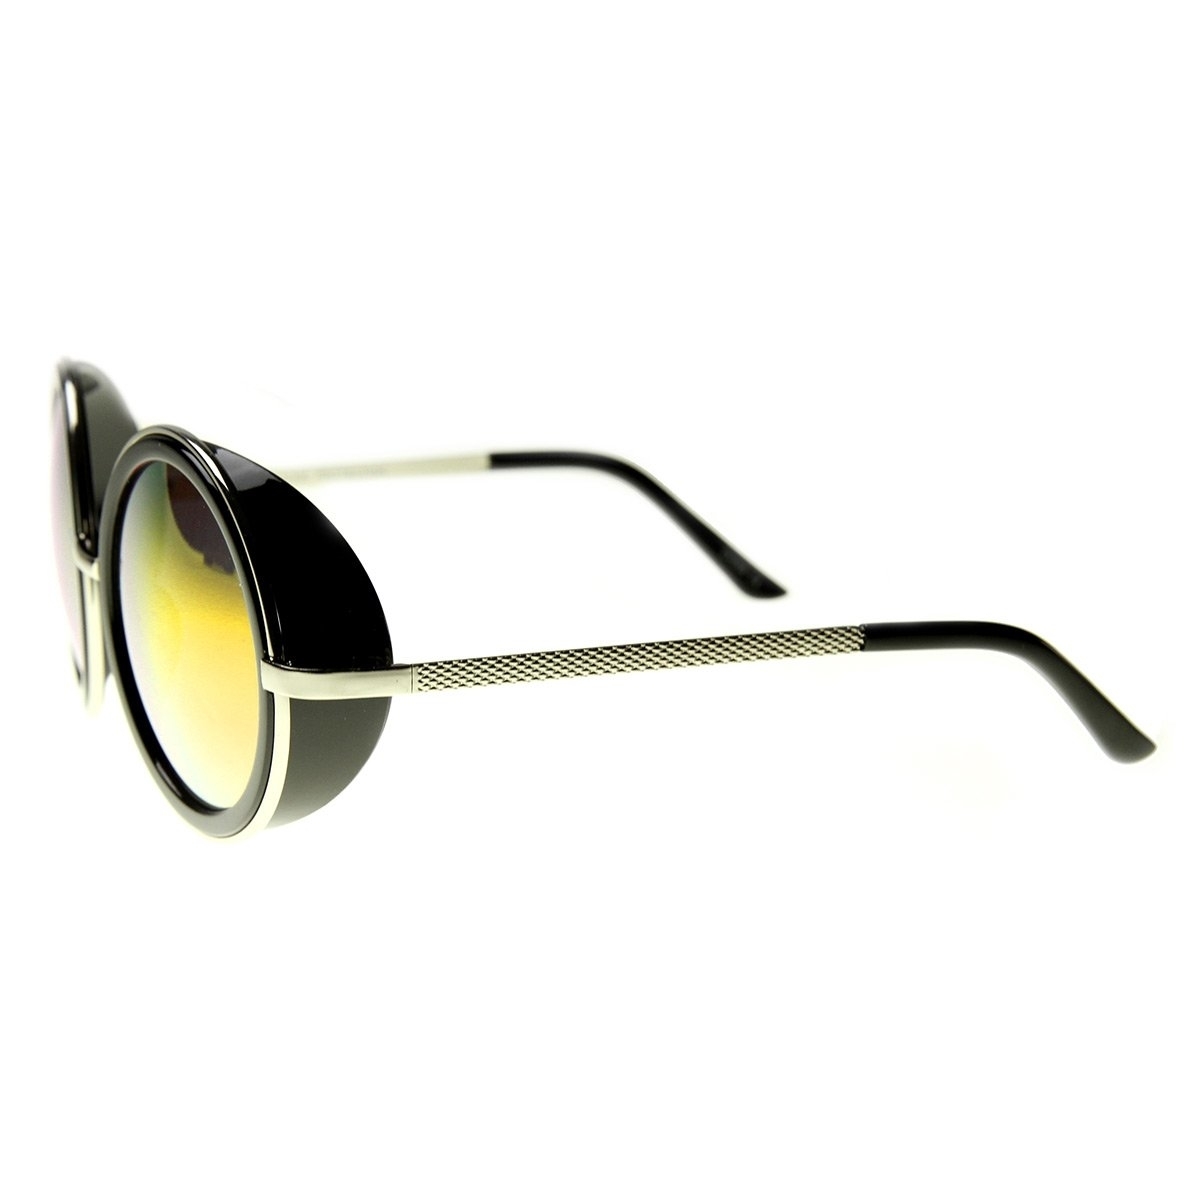 Unisex Premium Round Flash Mirror Studio Cover Sunglasses - Gold-Black Sun